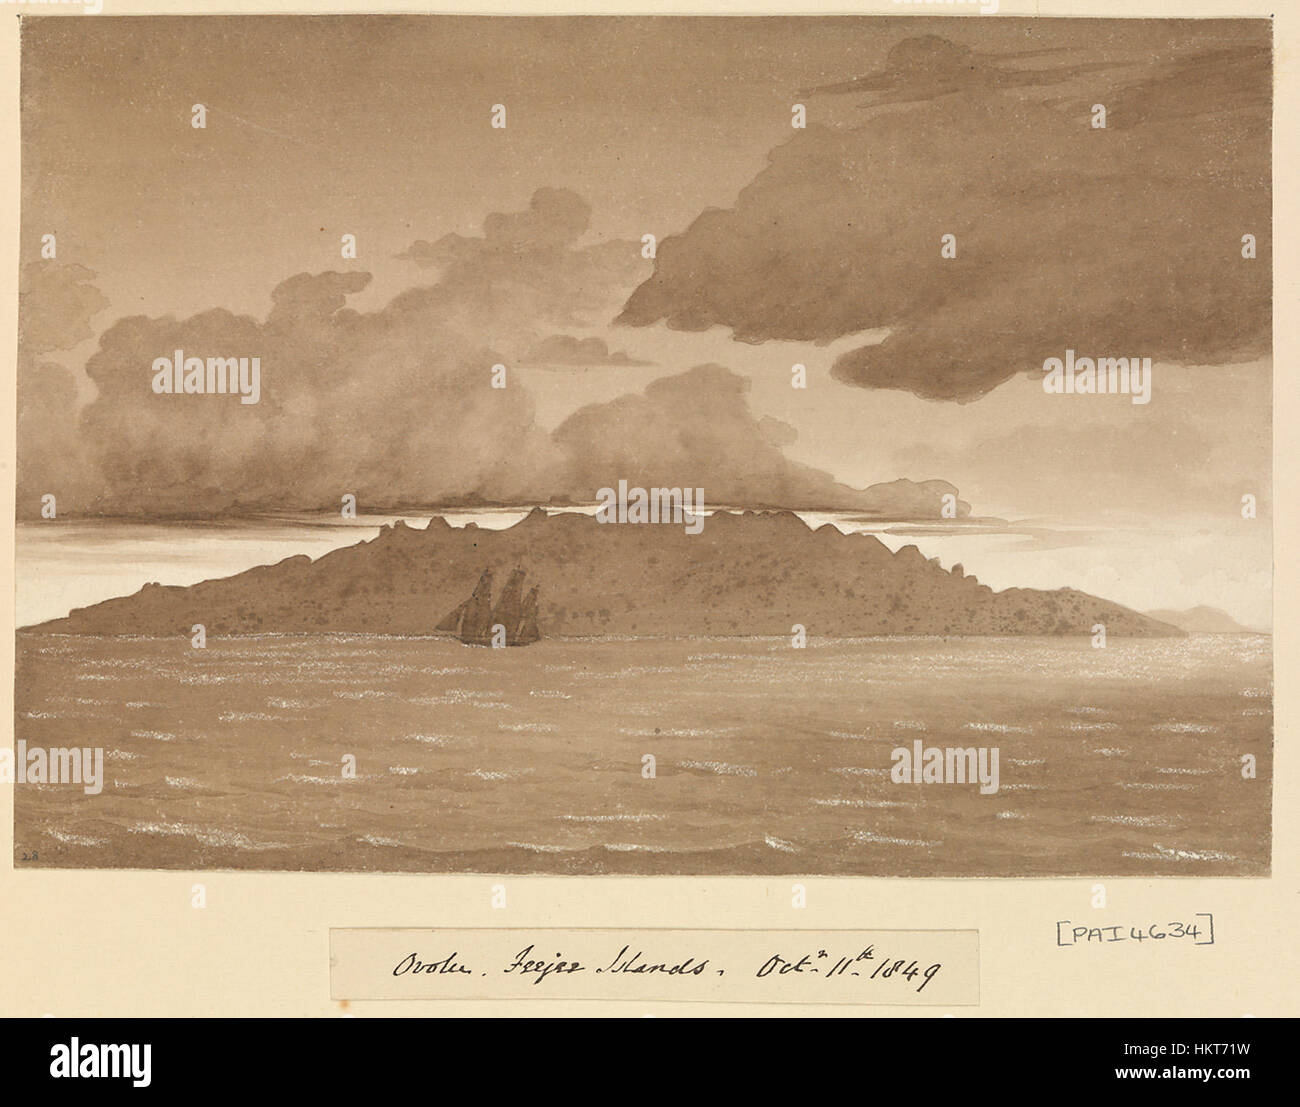 Edward Gennys Fanshawe, Ovolu (Ovolau), Feejee Islands, Octr 11th 1849 (Fiji) Stock Photo